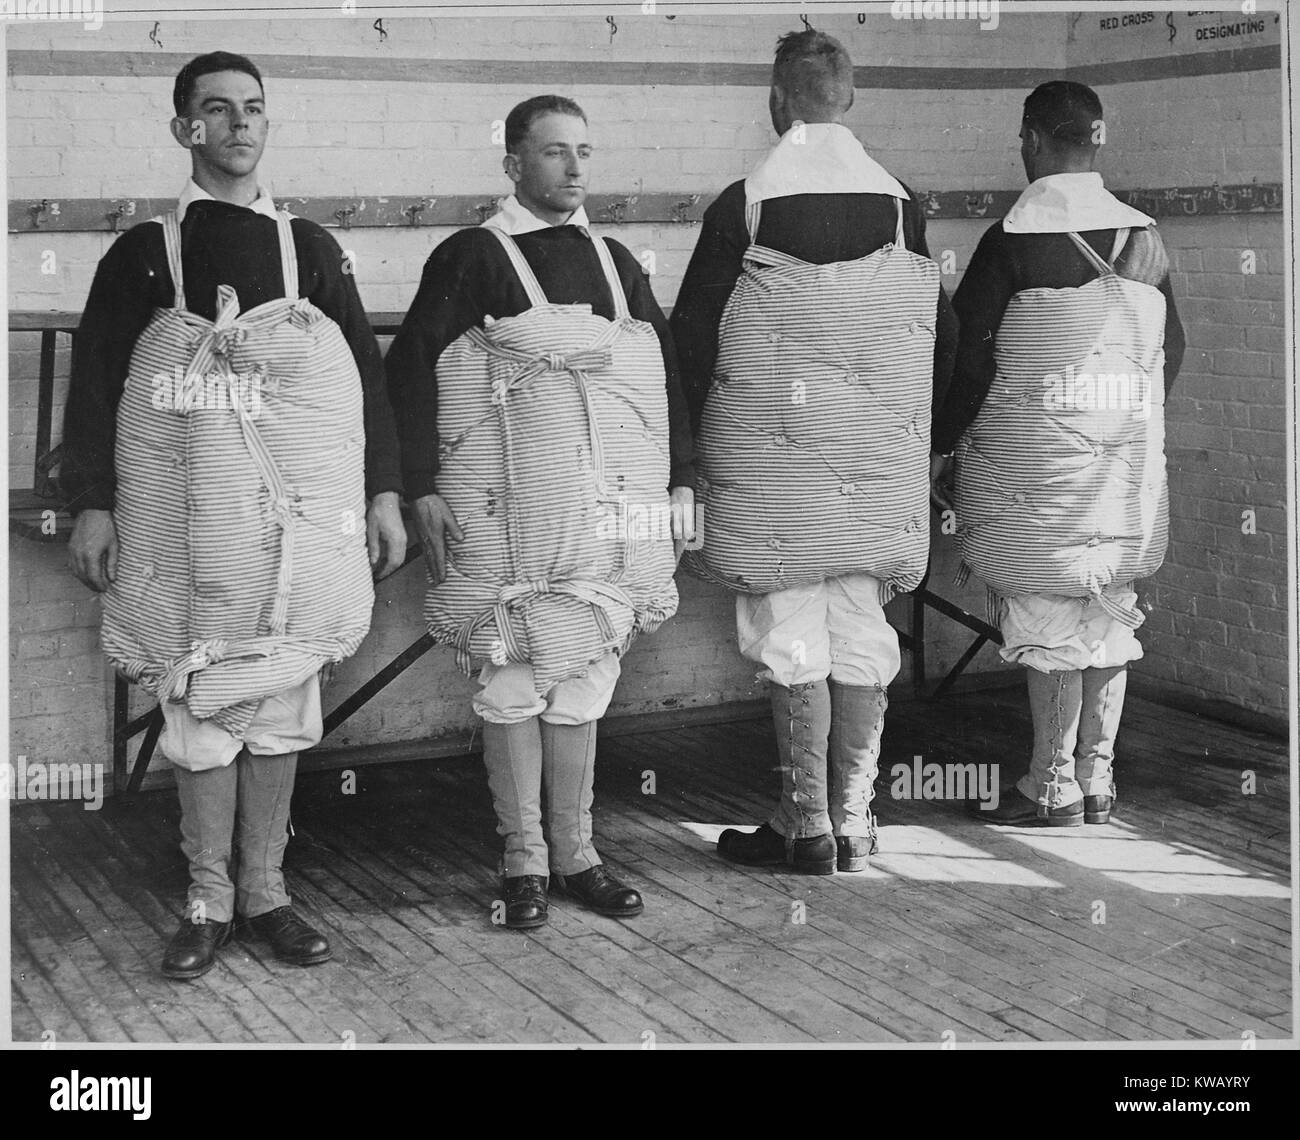 Les recrues de la marine US avec des matelas permanent lié à eux pour servir de gilets, de formation navale de Newport, Rhode Island, Avril, 1917. L'image de courtoisie des Archives nationales. Banque D'Images